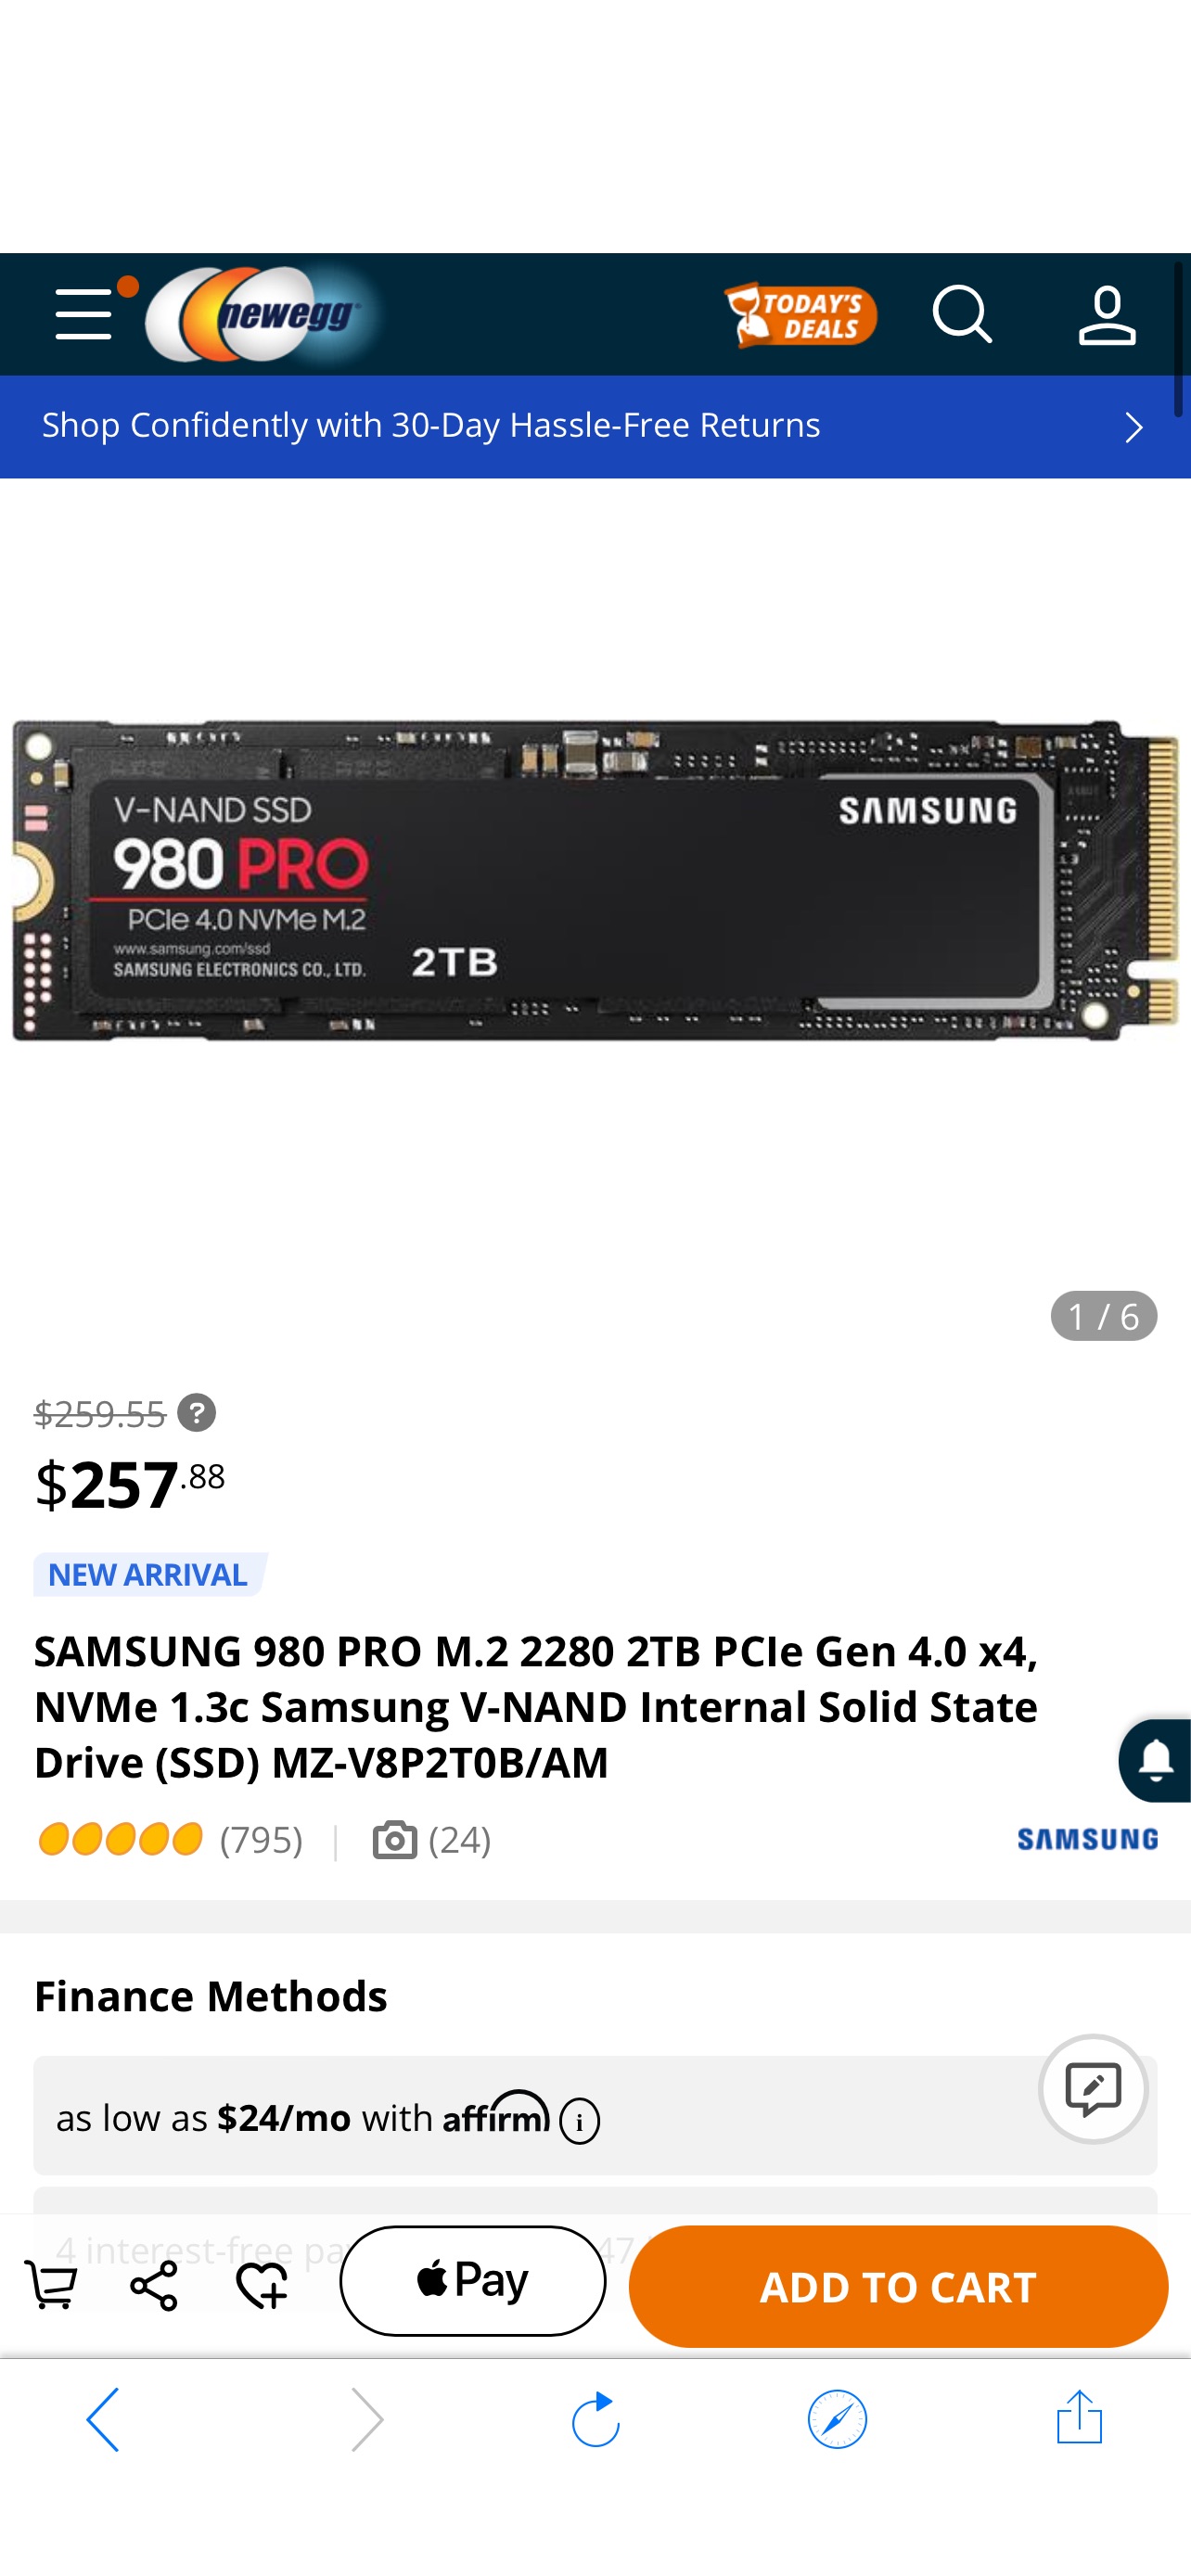 SAMSUNG 980 PRO M.2 2280 2TB PCIe Gen 4.0 x4,新蛋史低